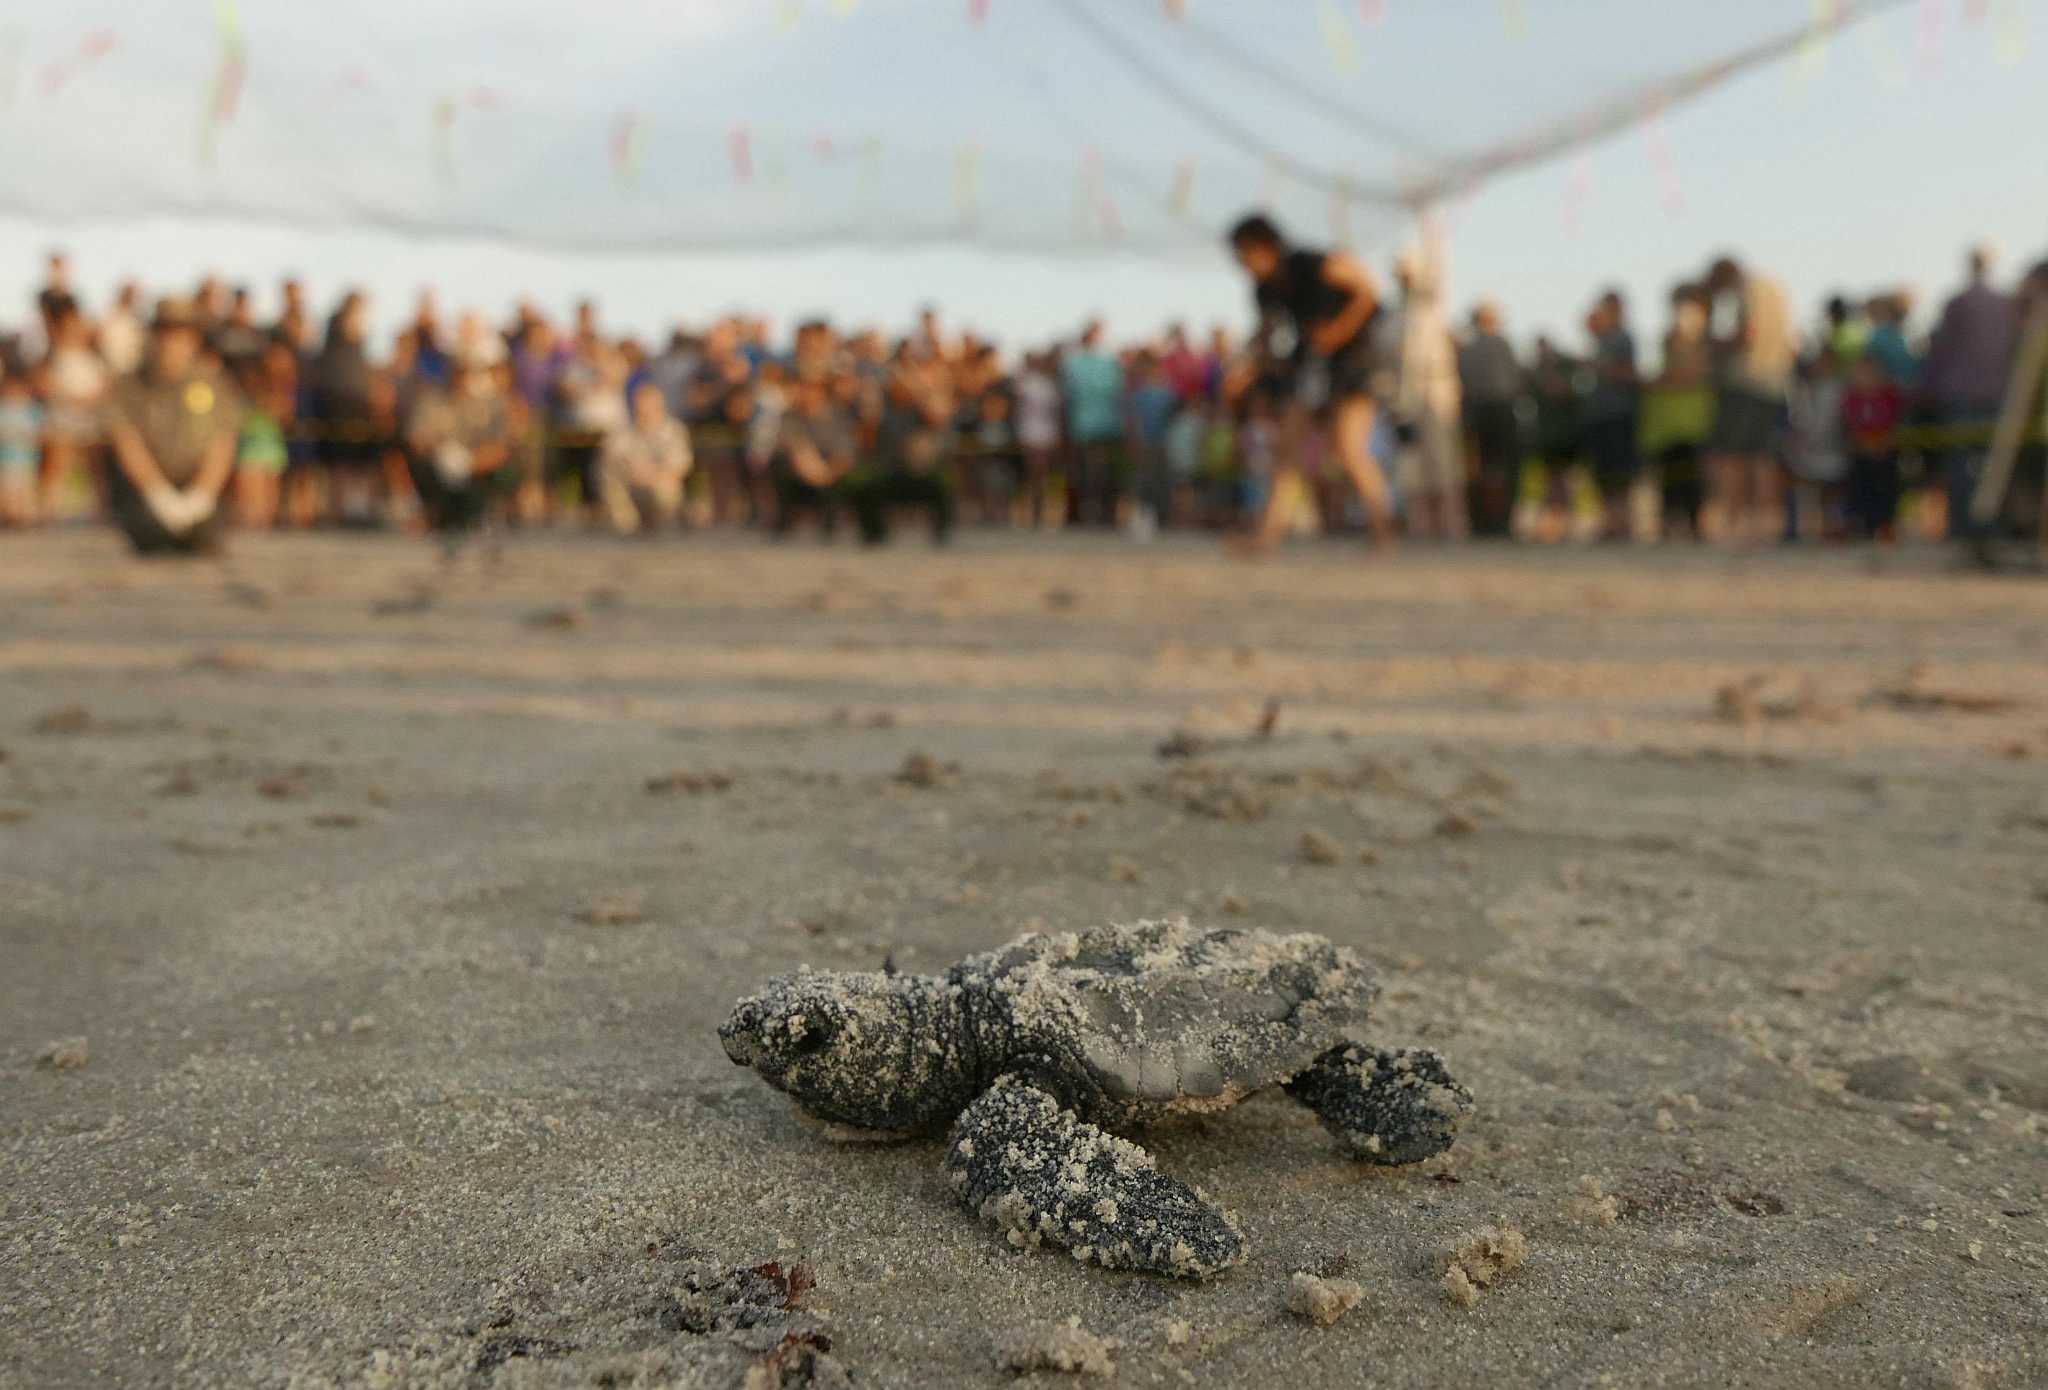 Padre Island National Seashore announces public turtle hatchling